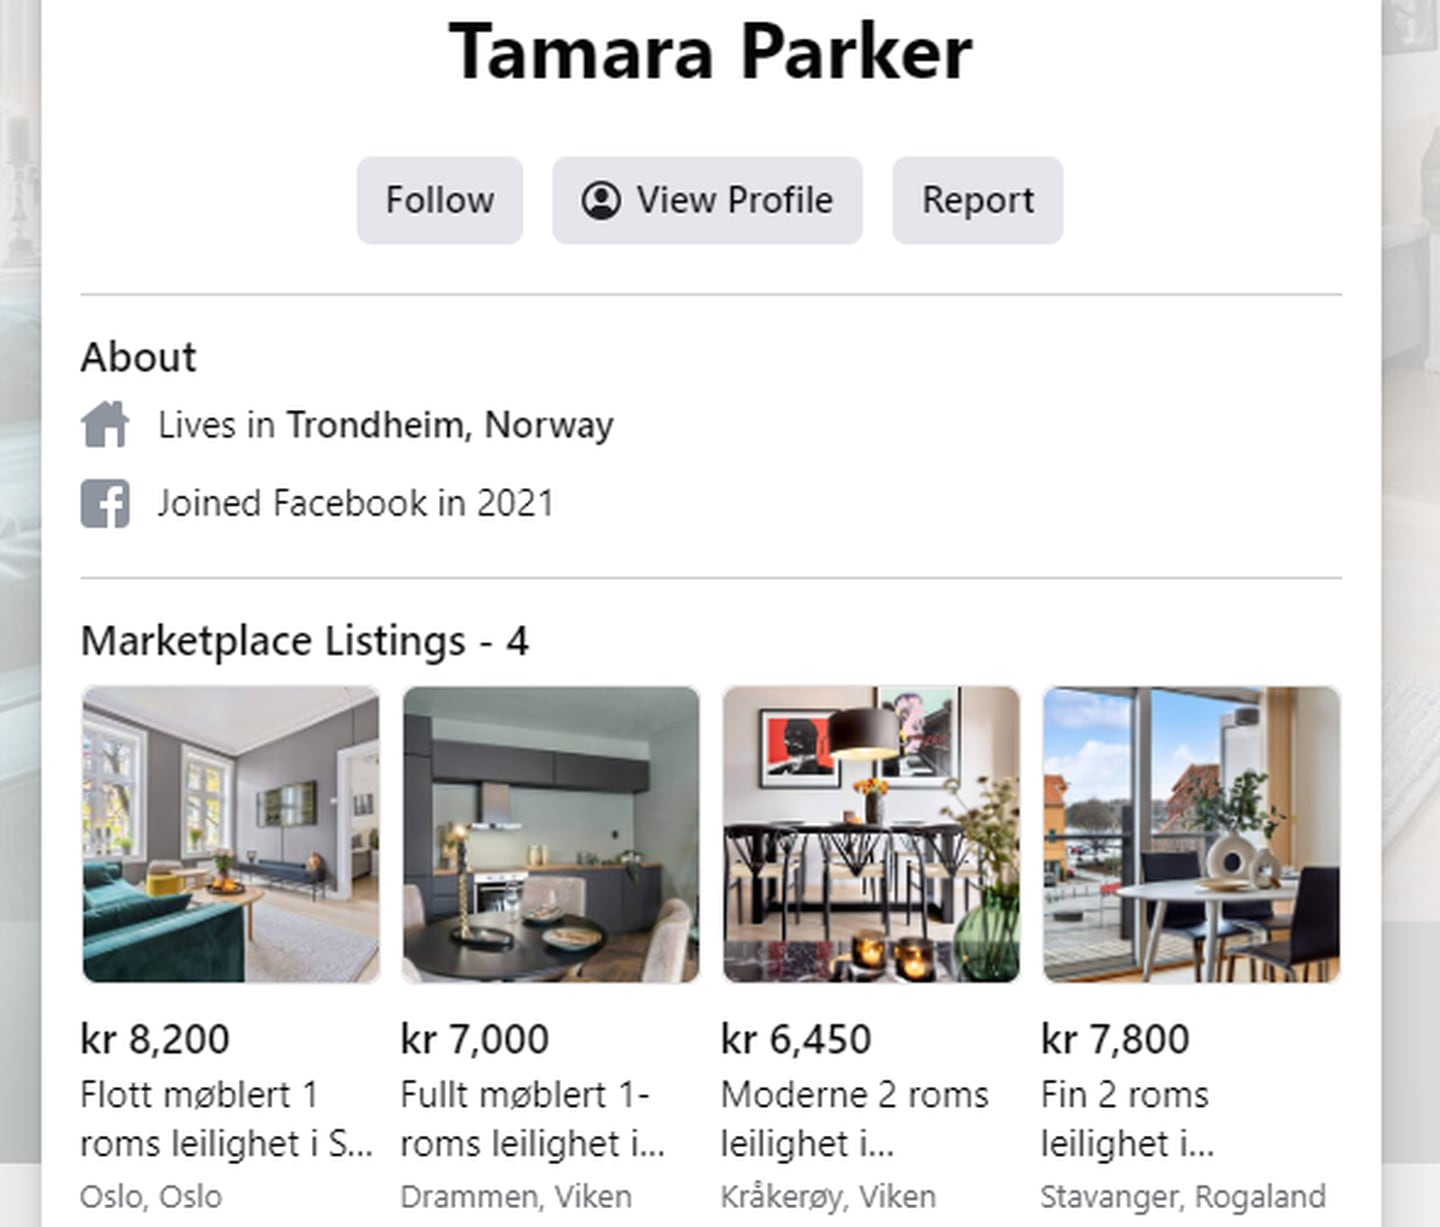 Den påståtte utleieren Tamara Parker, har leiligheter for leie over hele landet. Selv hevder hun å bo i Trondheim.

Foto: Skjermdump